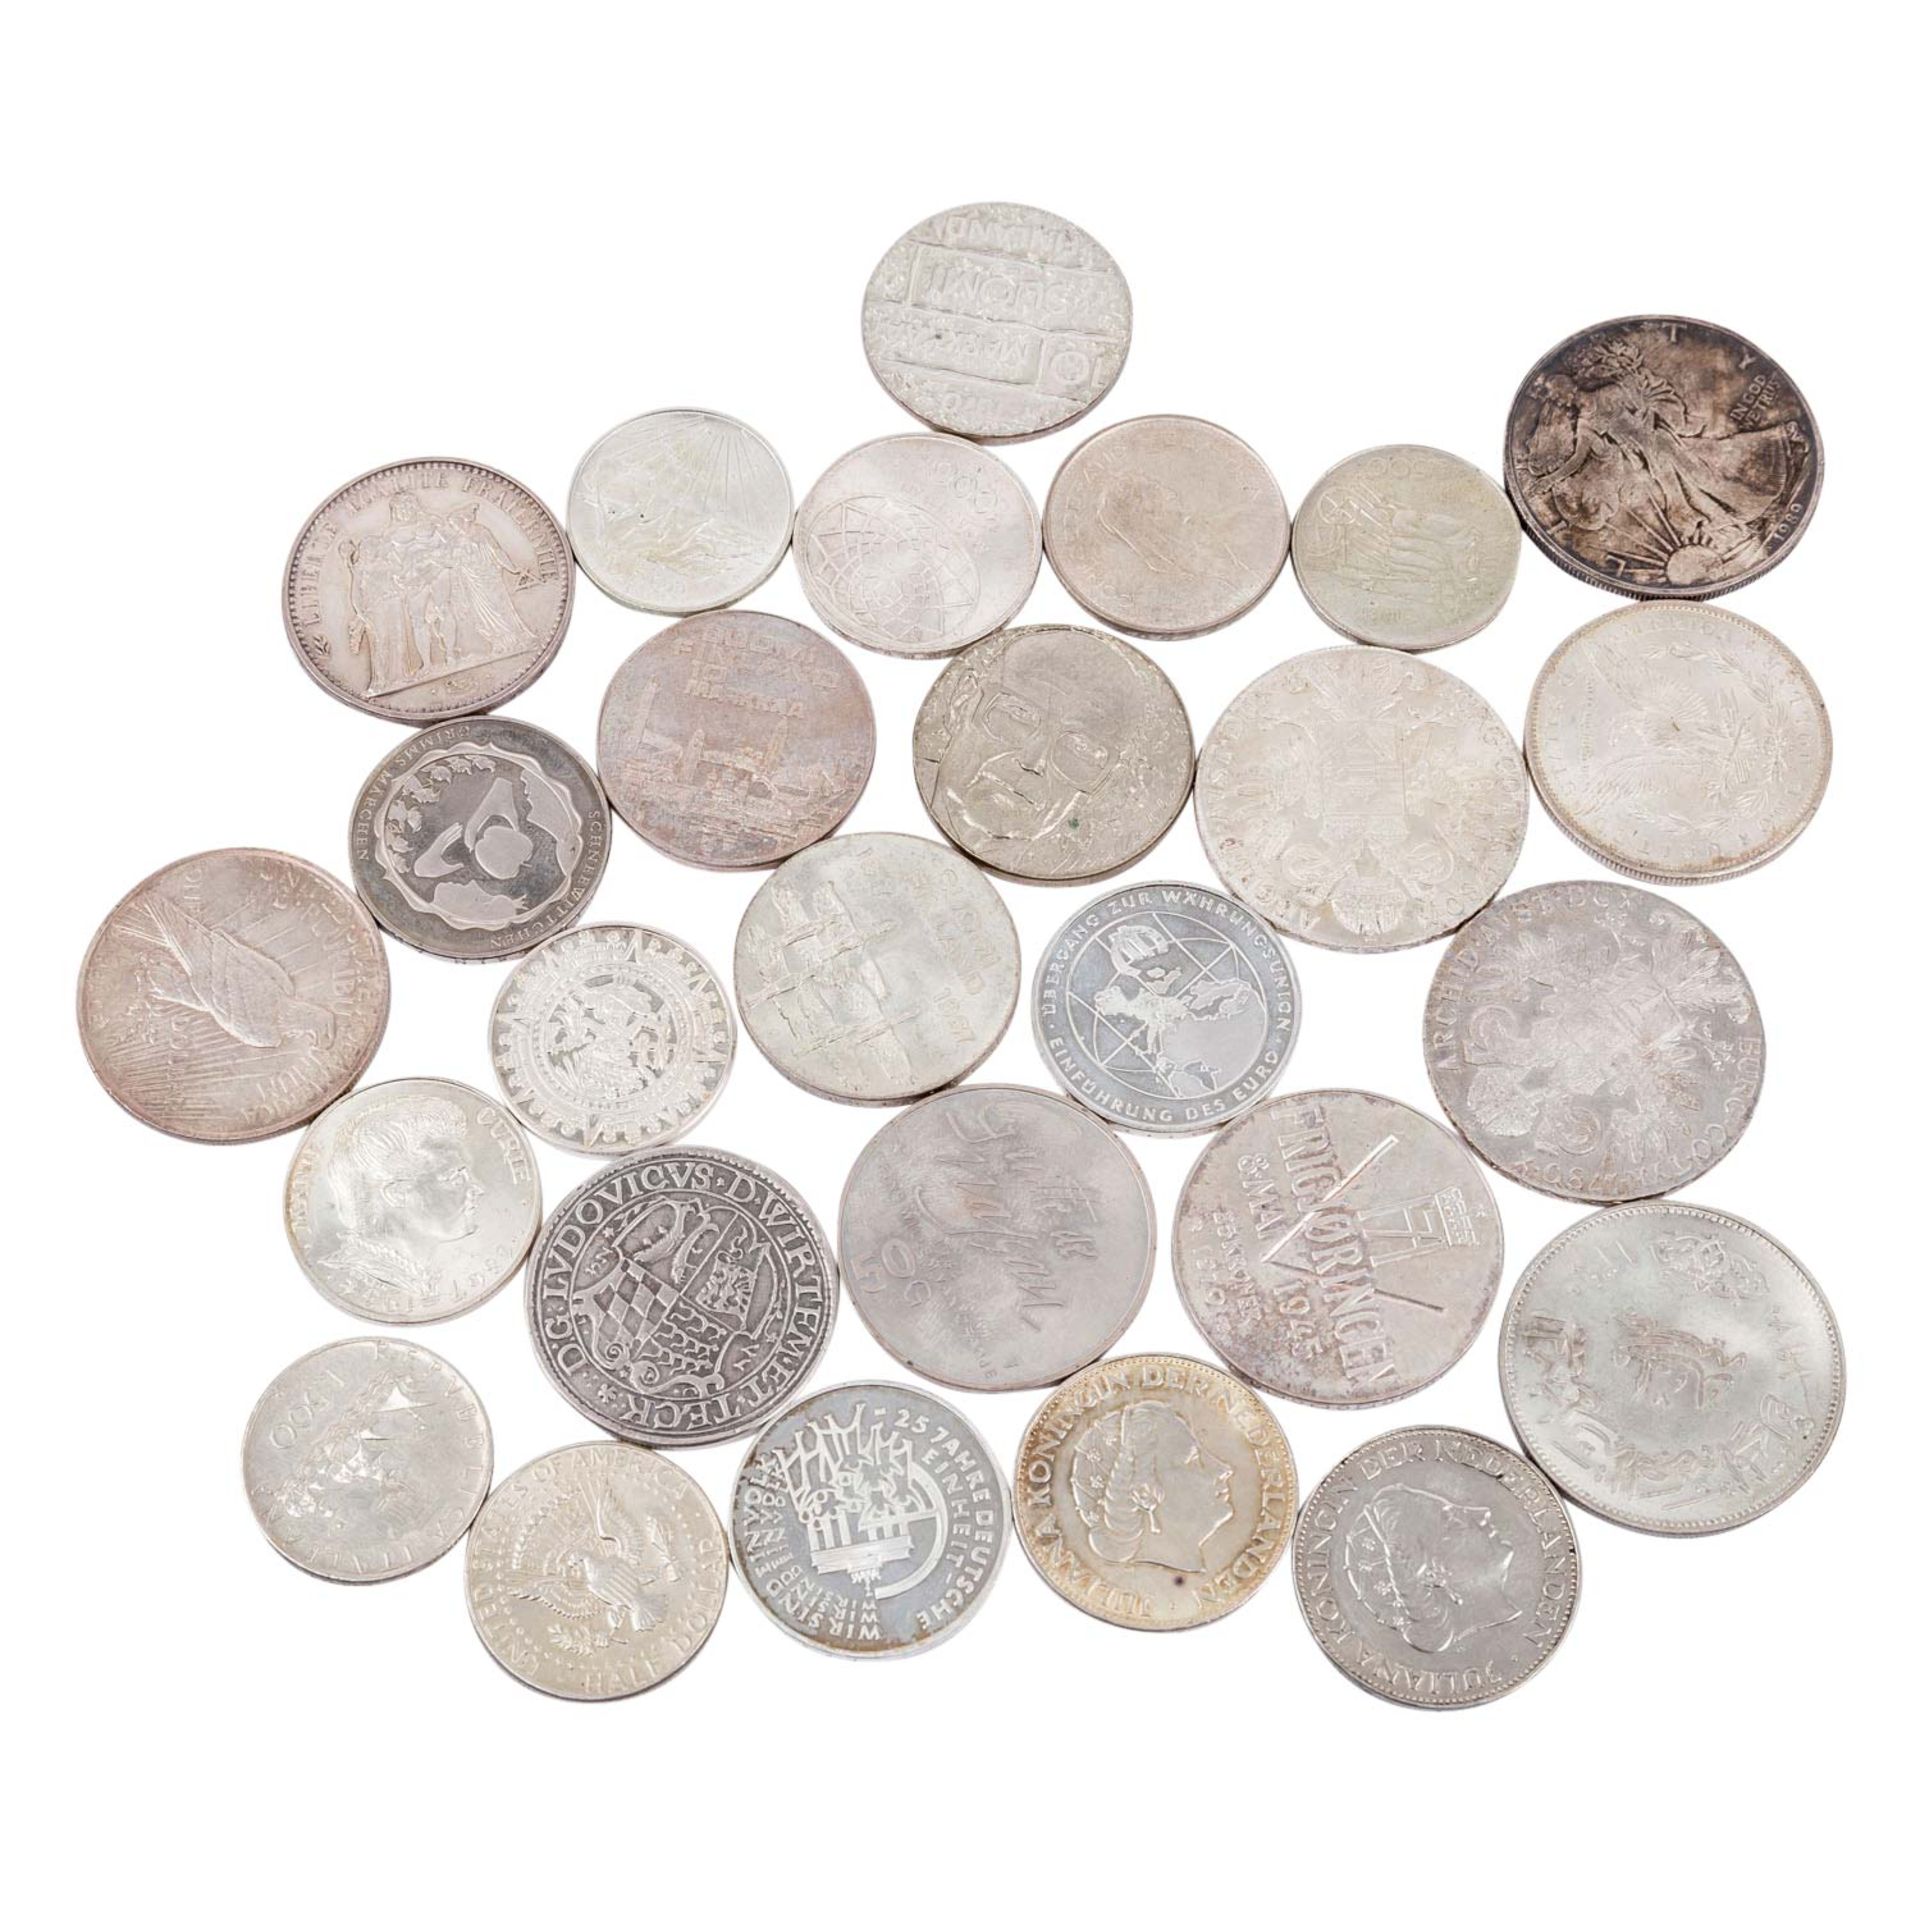 Kleines gemischtes Silber-Konvolut mit Münzen aus aller Welt. 27 Stück. - Image 2 of 2